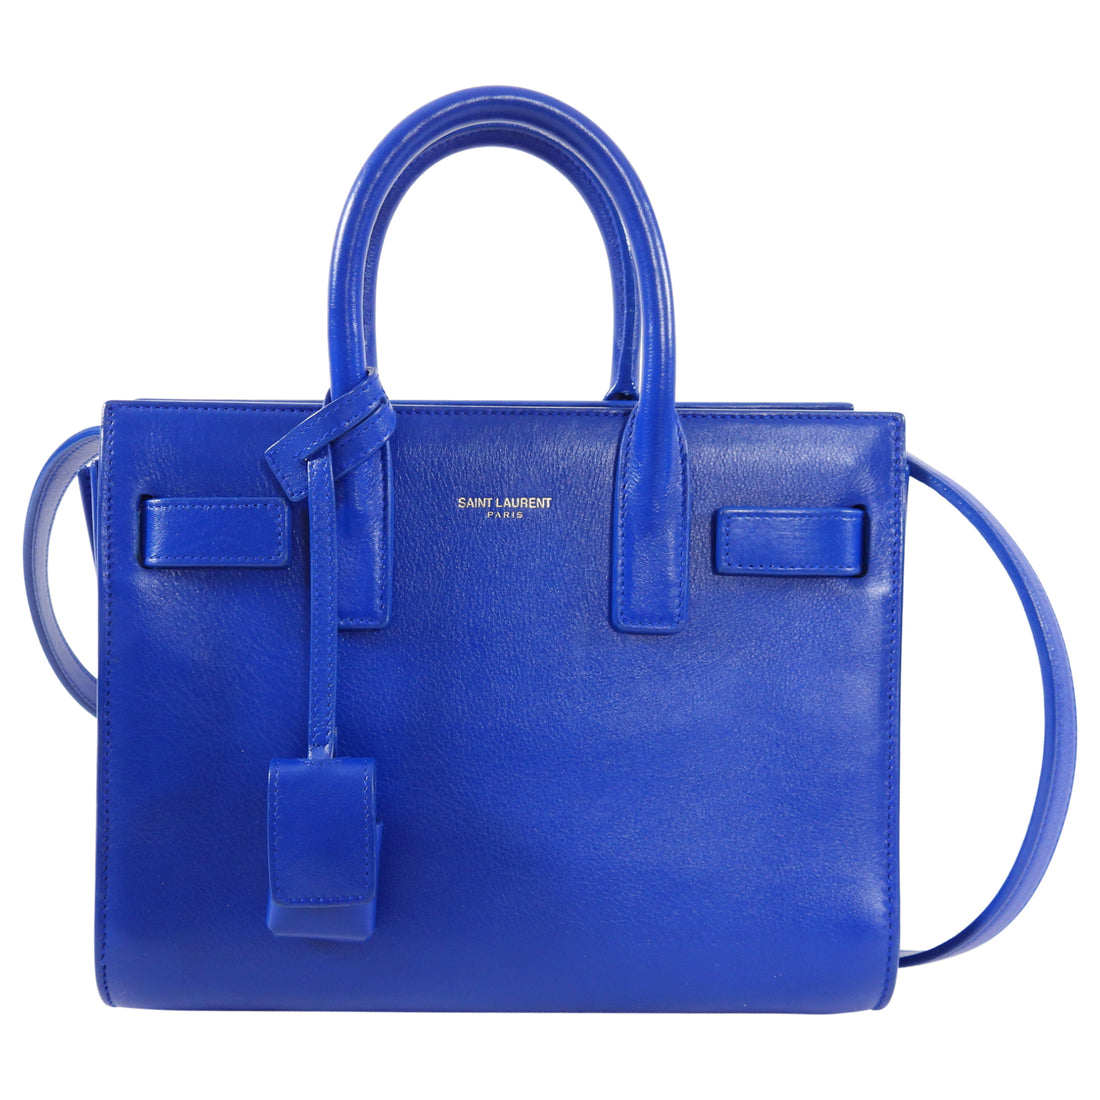 Saint Laurent Sac de Jour Nano Cobalt Blue Two-Way Bag